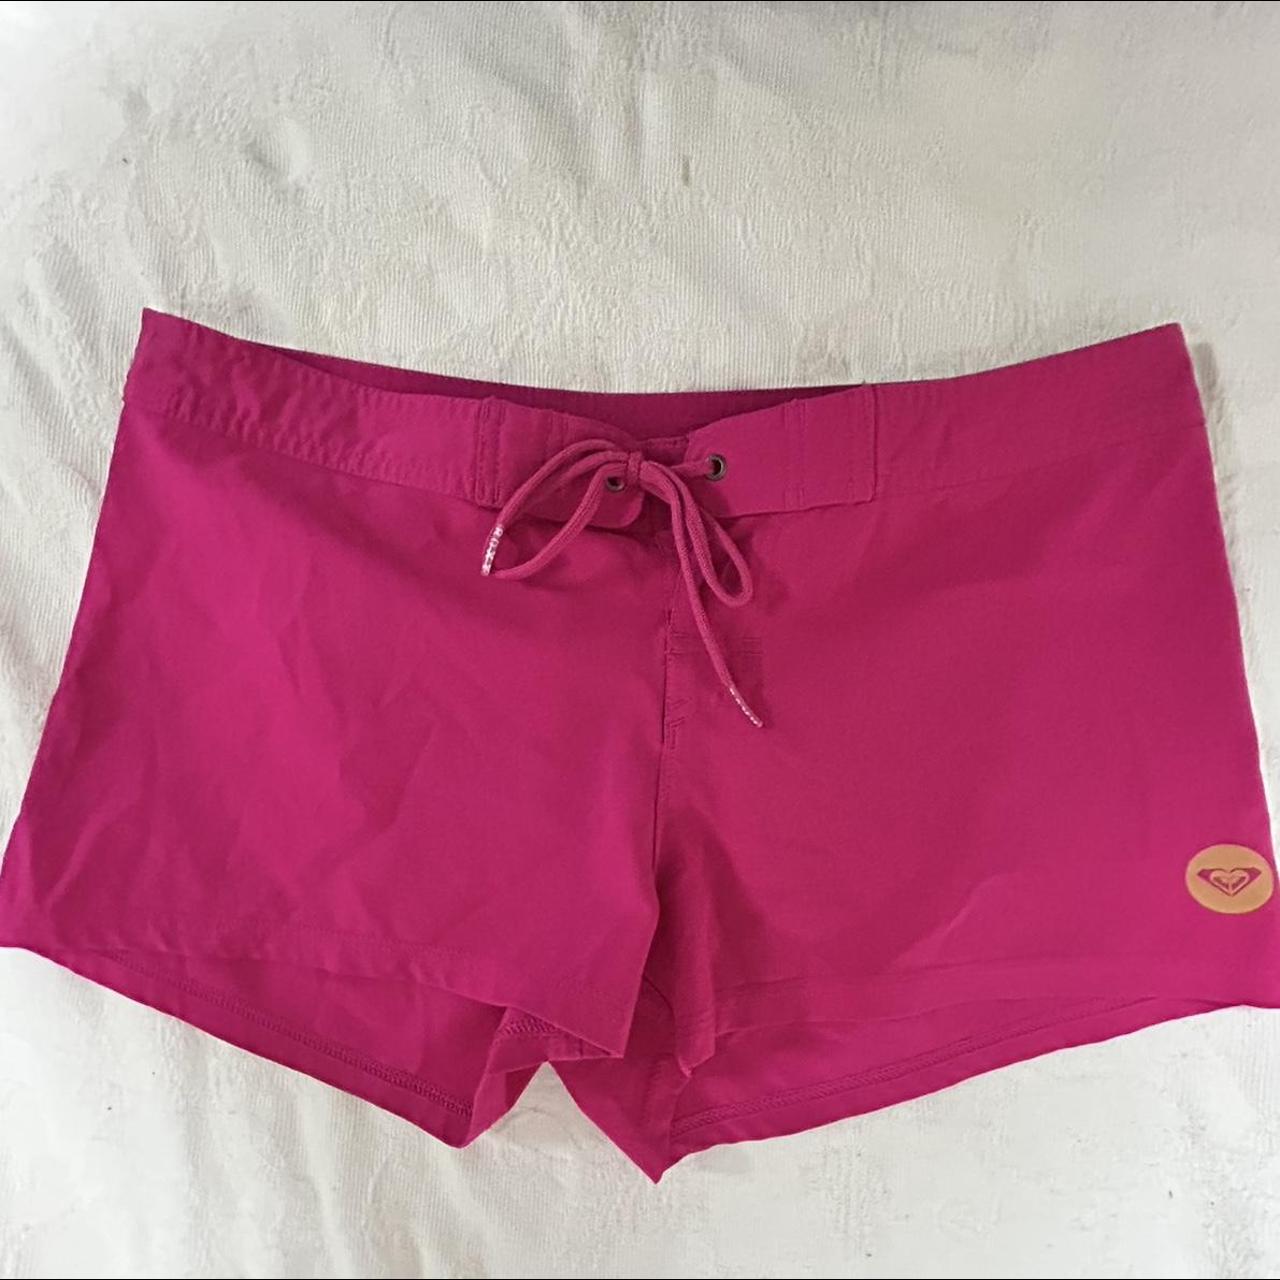 Roxy hot pink swim shorts Size small - Depop